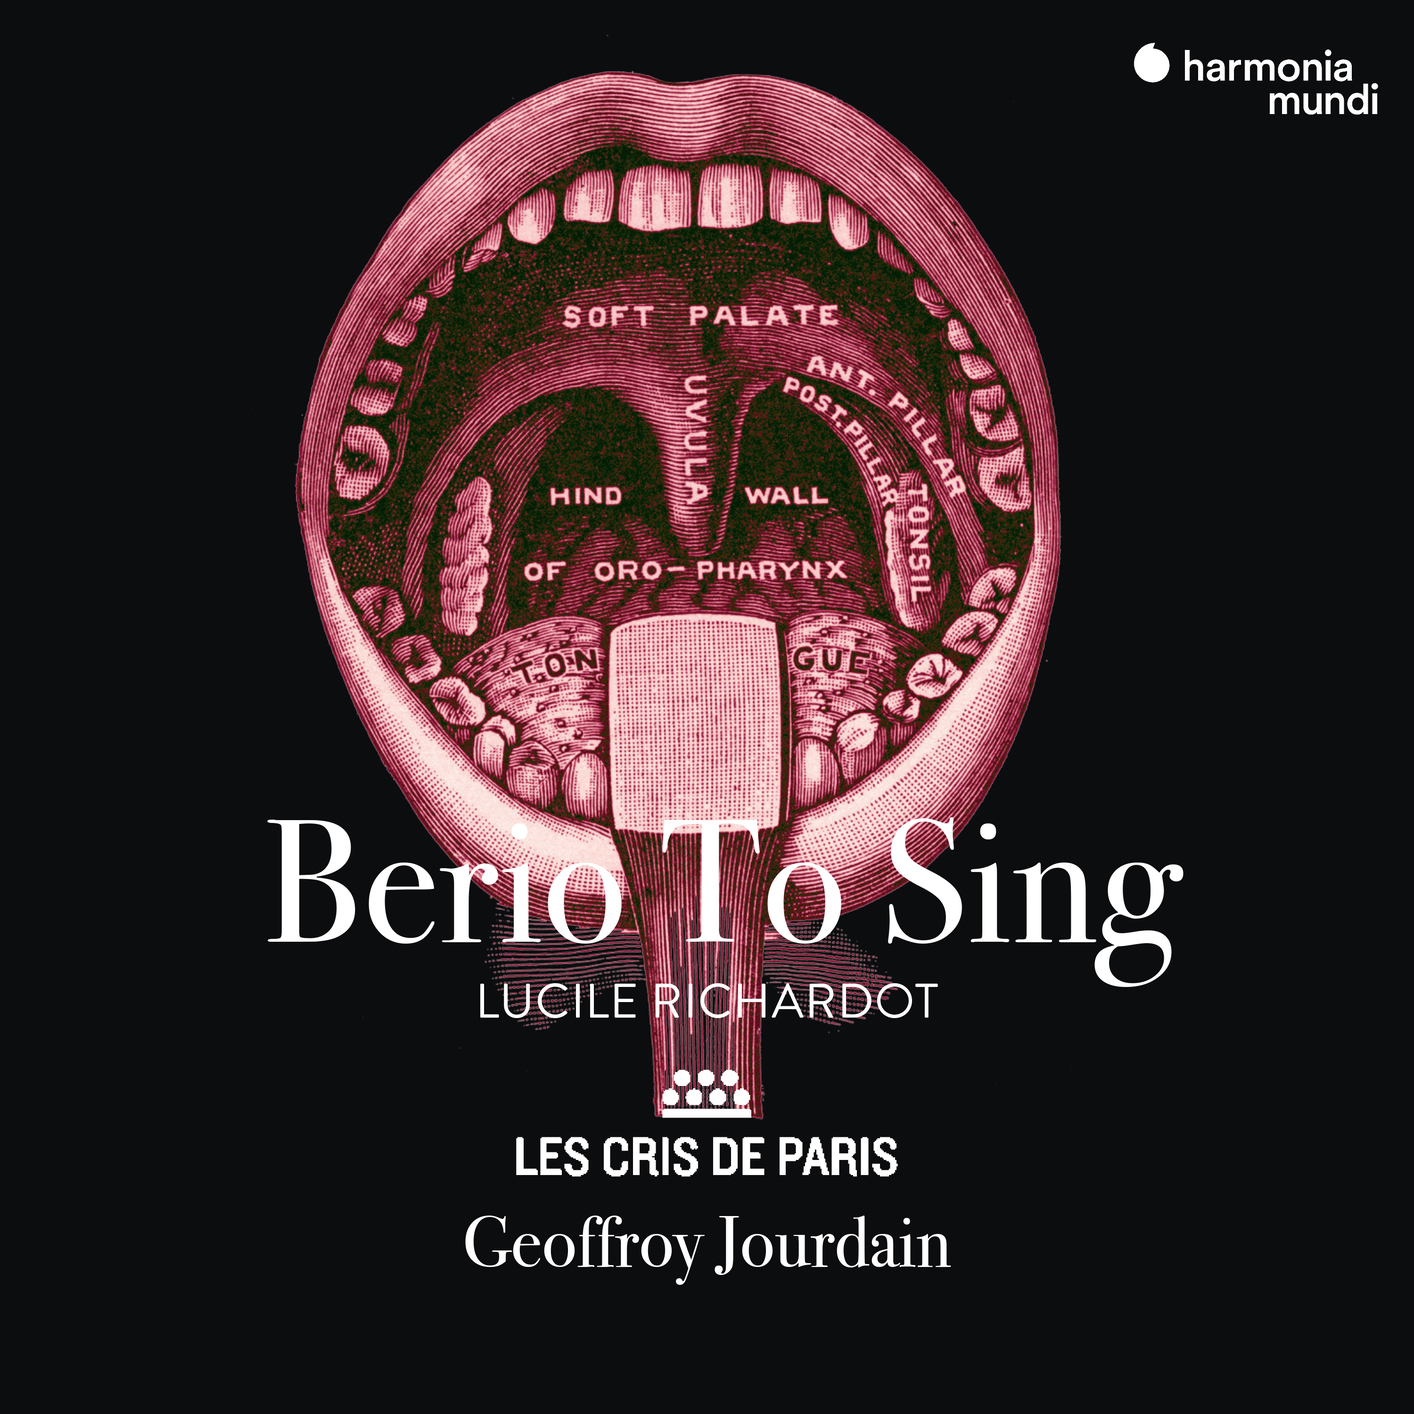 Lucile Richardot, Les Cris de Paris & Geoffroy Jourdain - Berio To Sing (2021) [FLAC 24bit/96kHz]